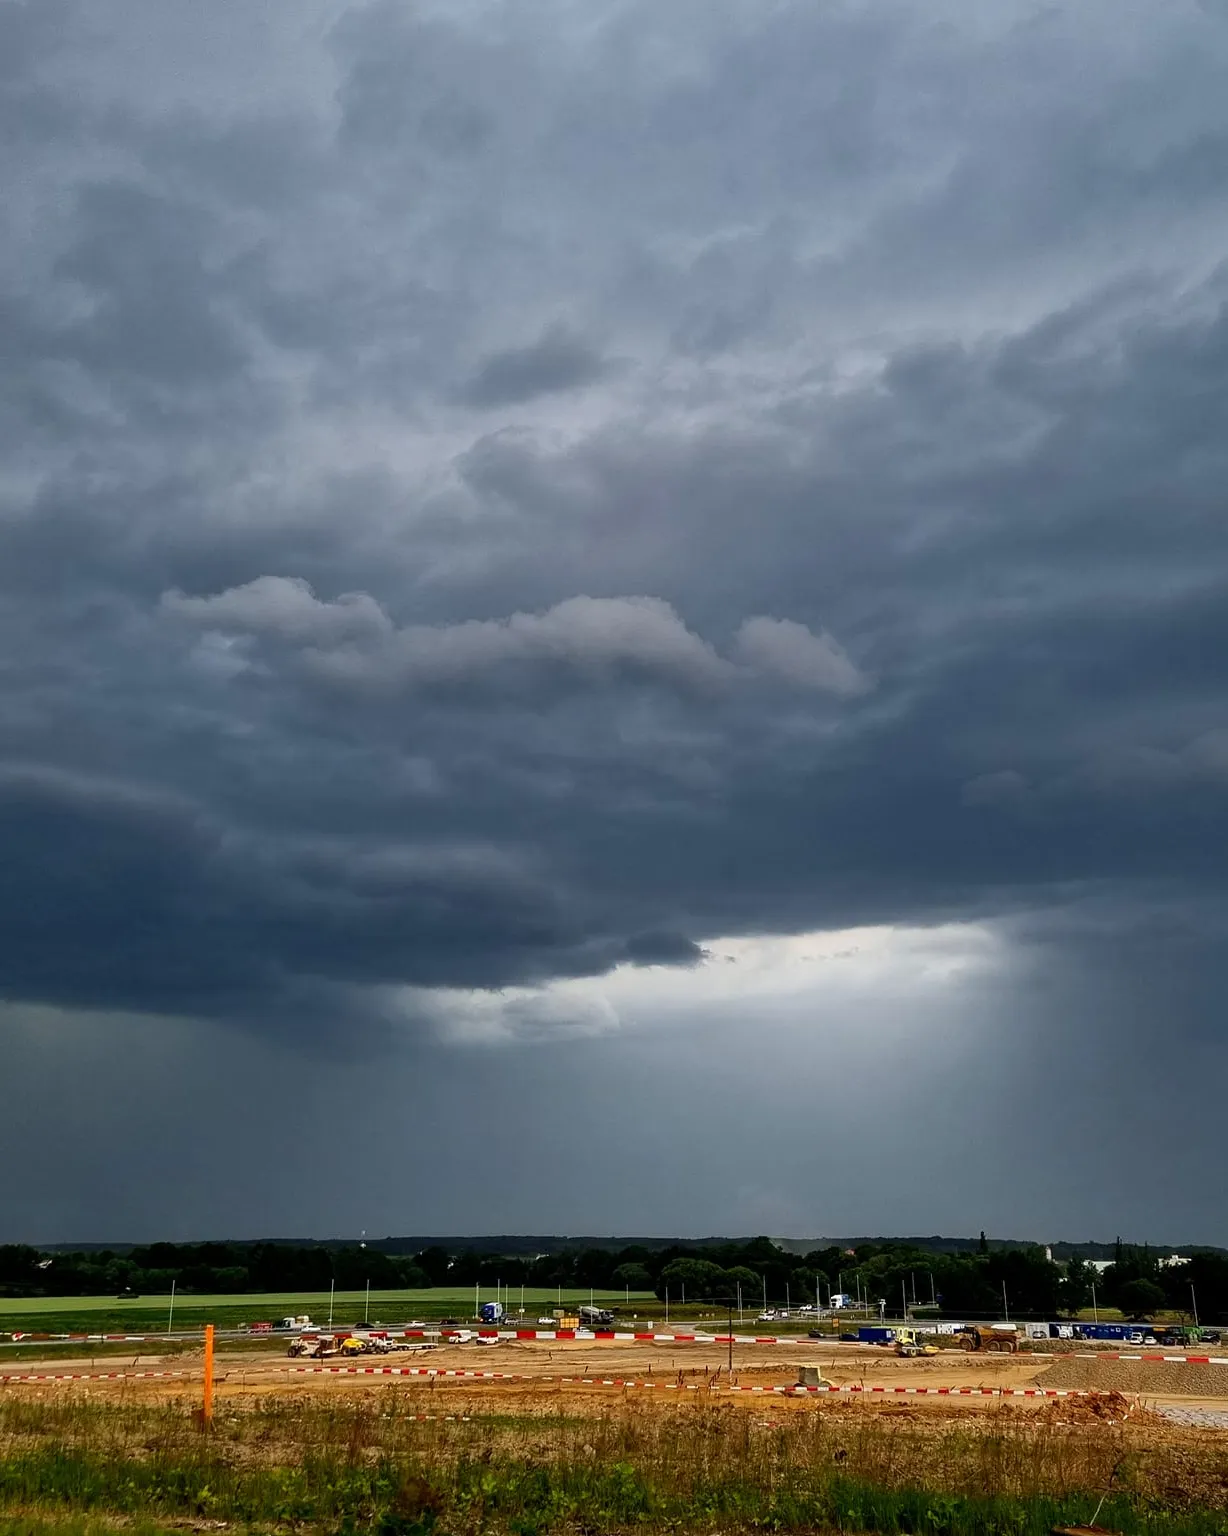 Většinu Česka zasáhnou bouřky, varují meteorologové